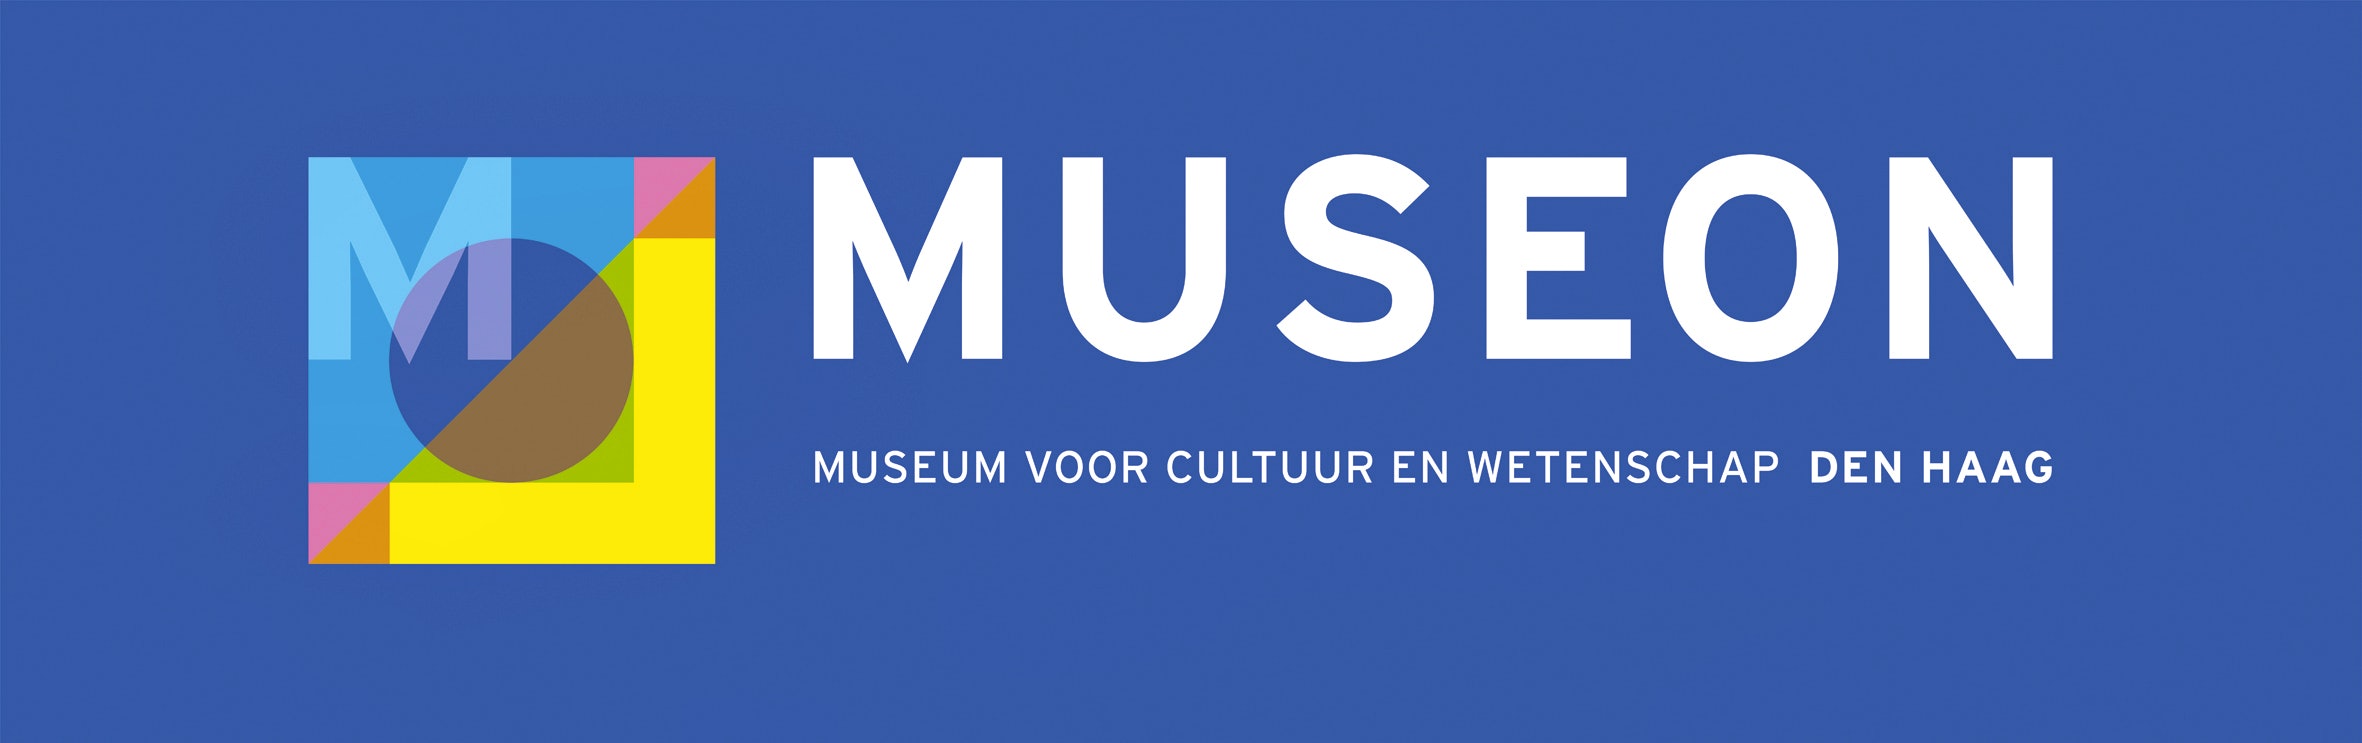 2 tickets voor Museon in Den Haag!